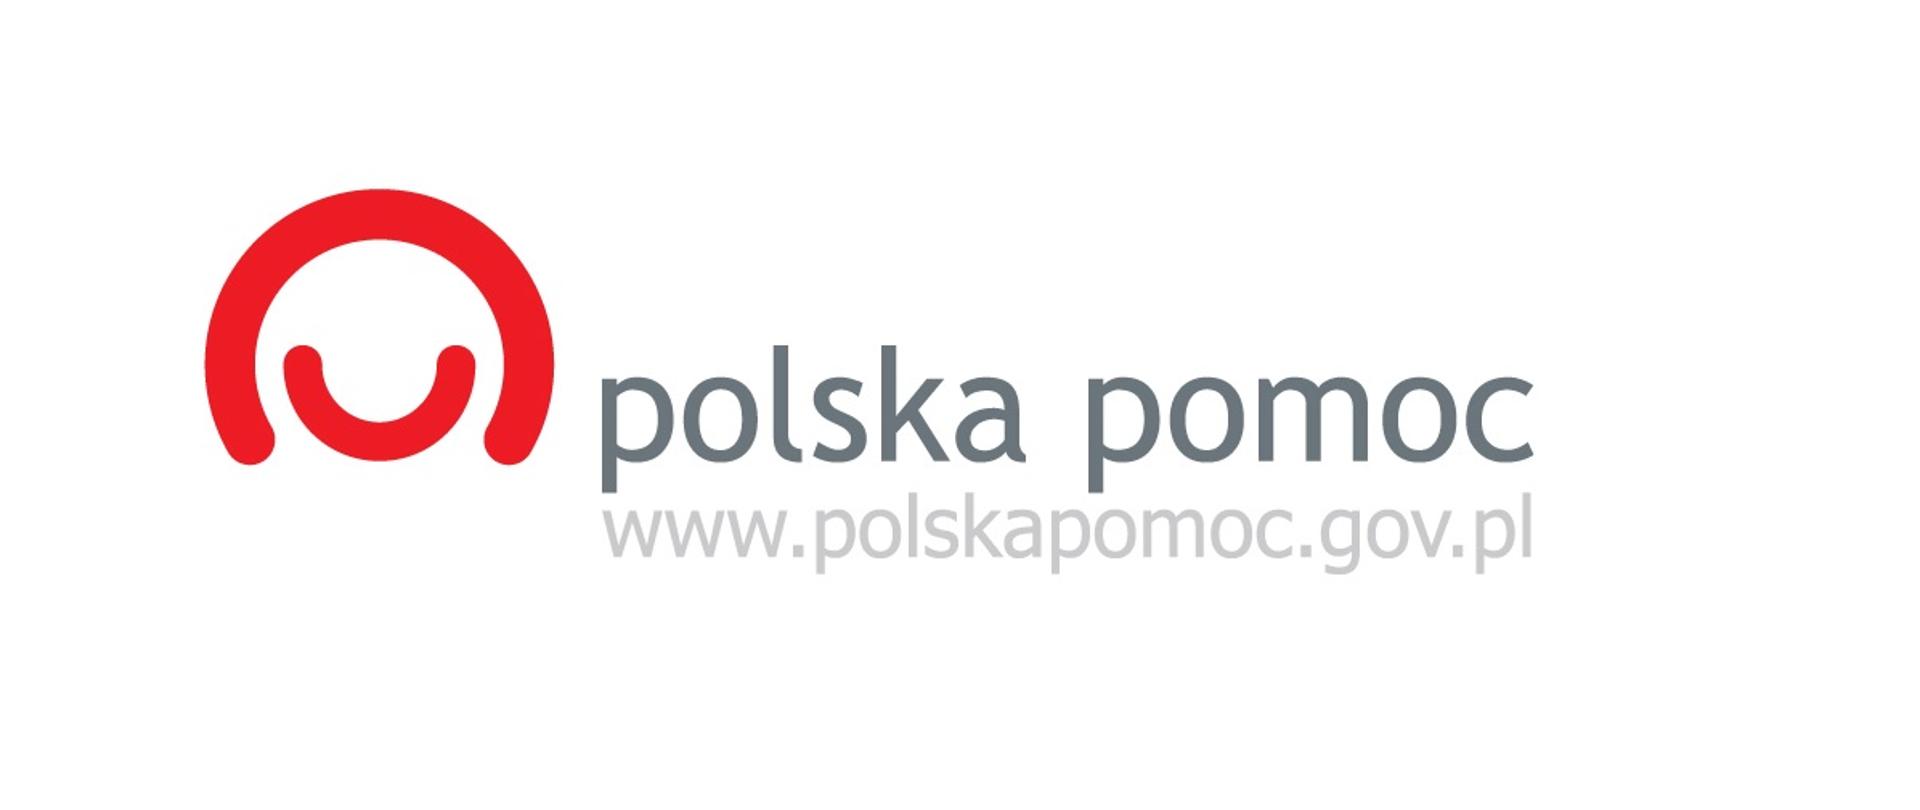 Polska pomoc logo